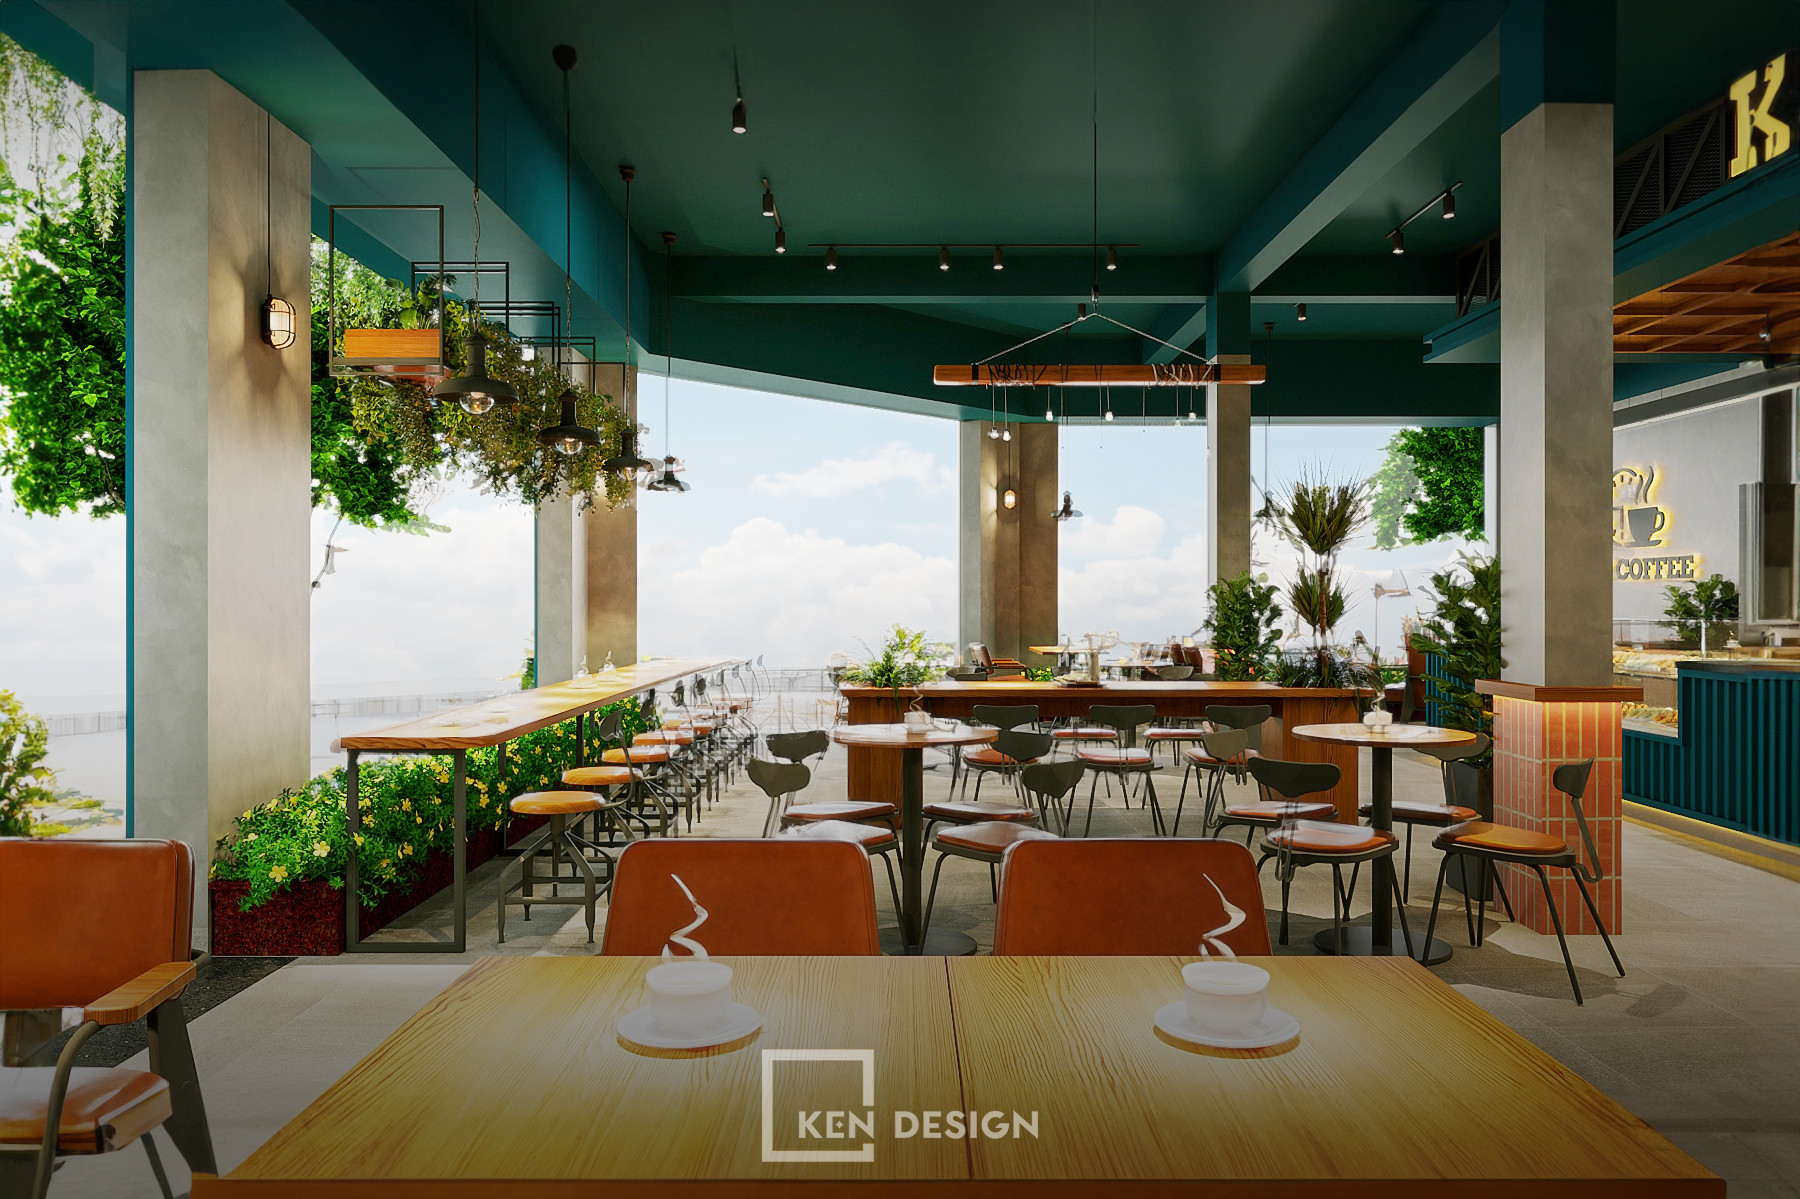 Thiết kế quán cafe K&T Quy Nhơn -Bình Định